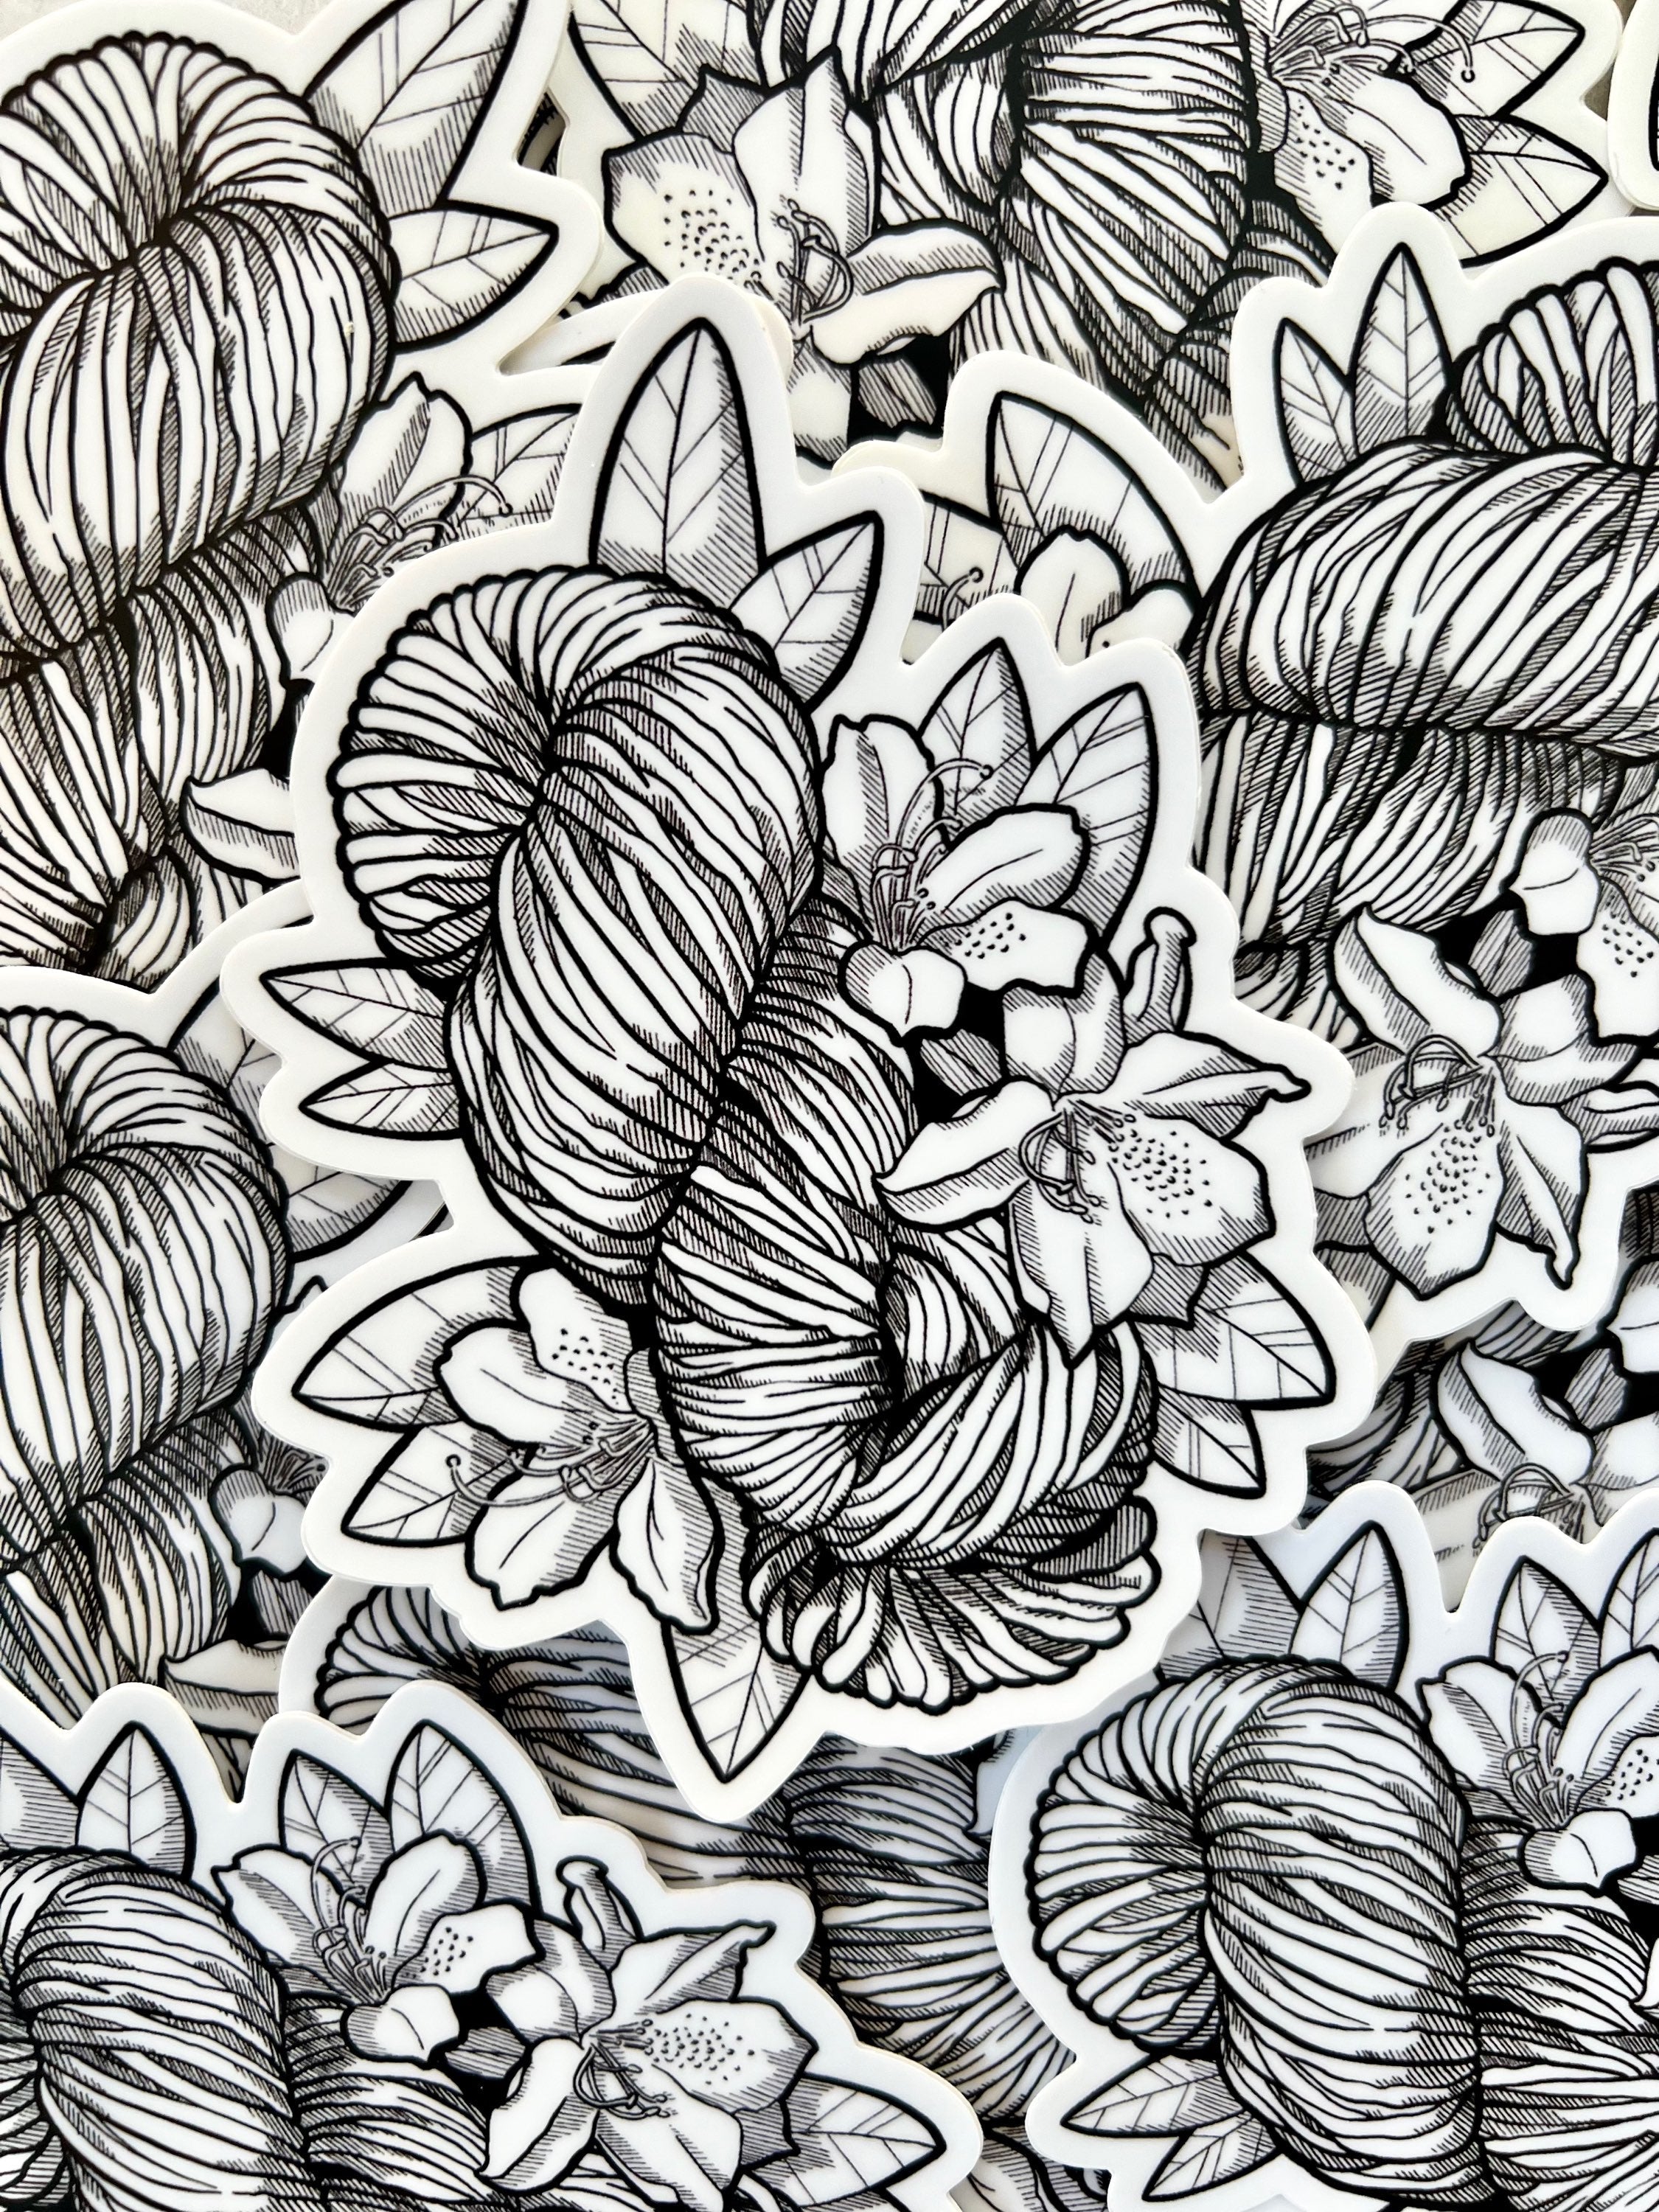 Sticker - Yarn Skein & Flowers